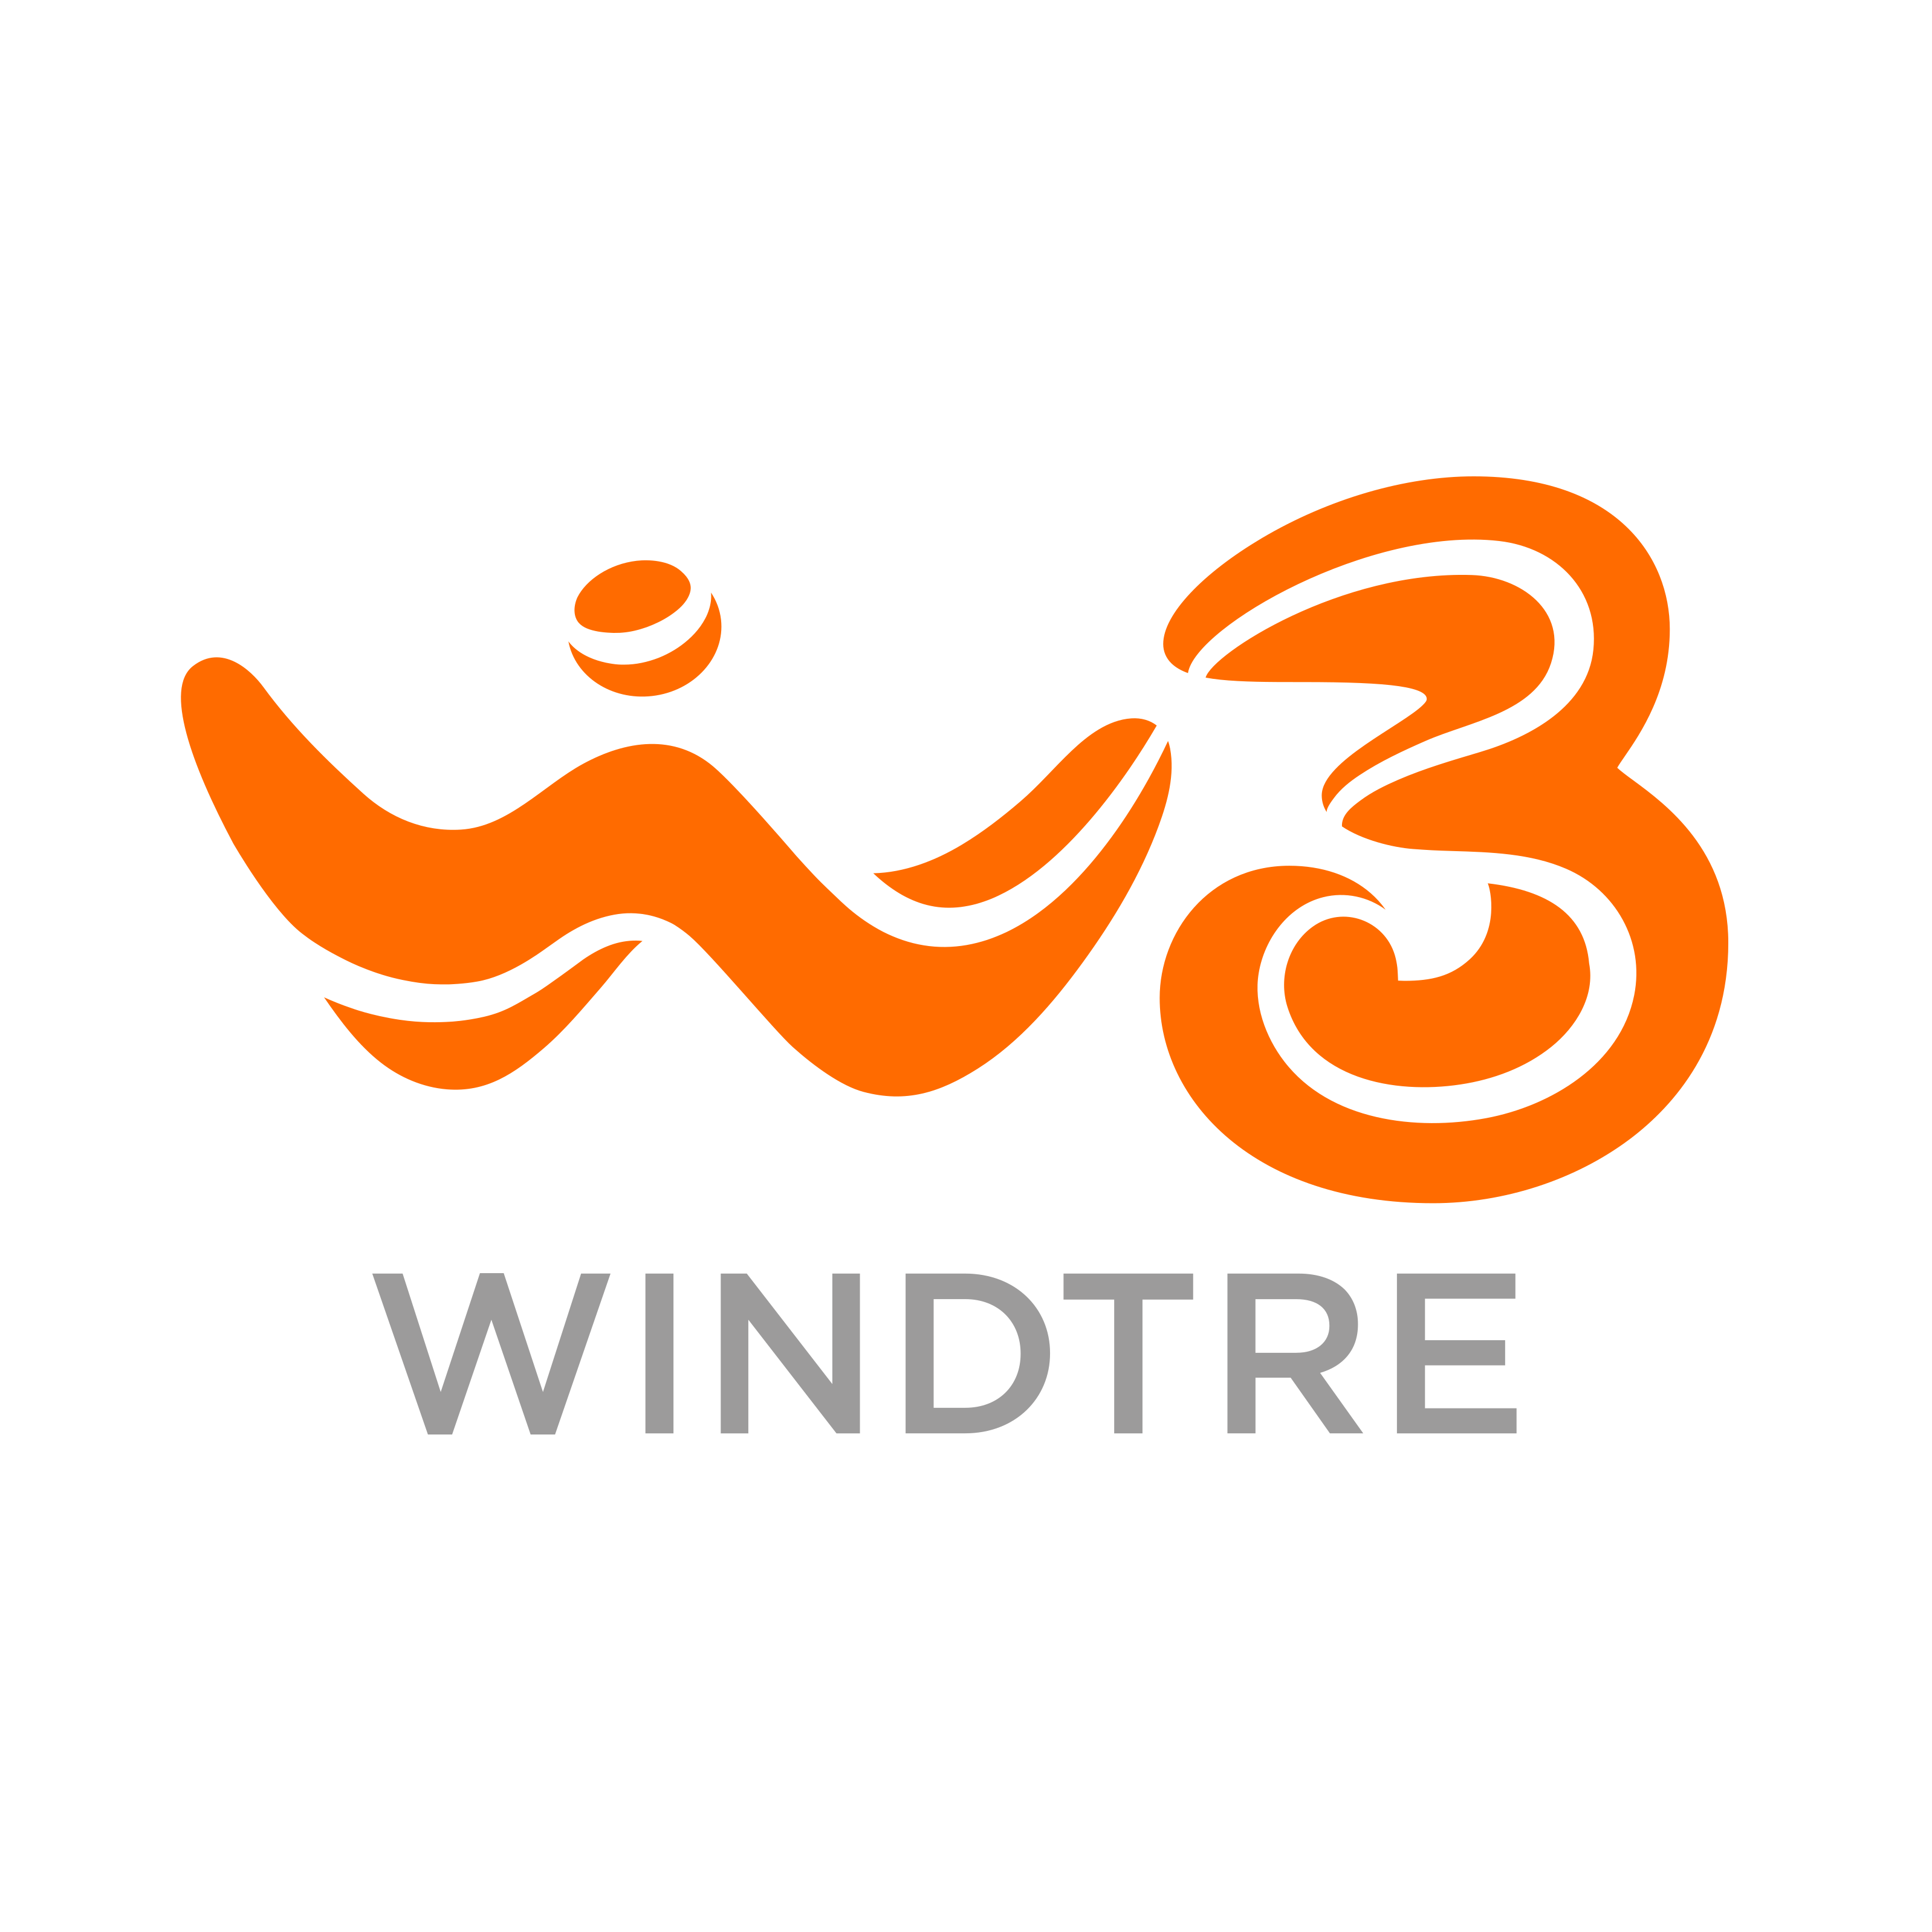 Nasce WINDTRE, un brand unico per una rete che unisce le persone